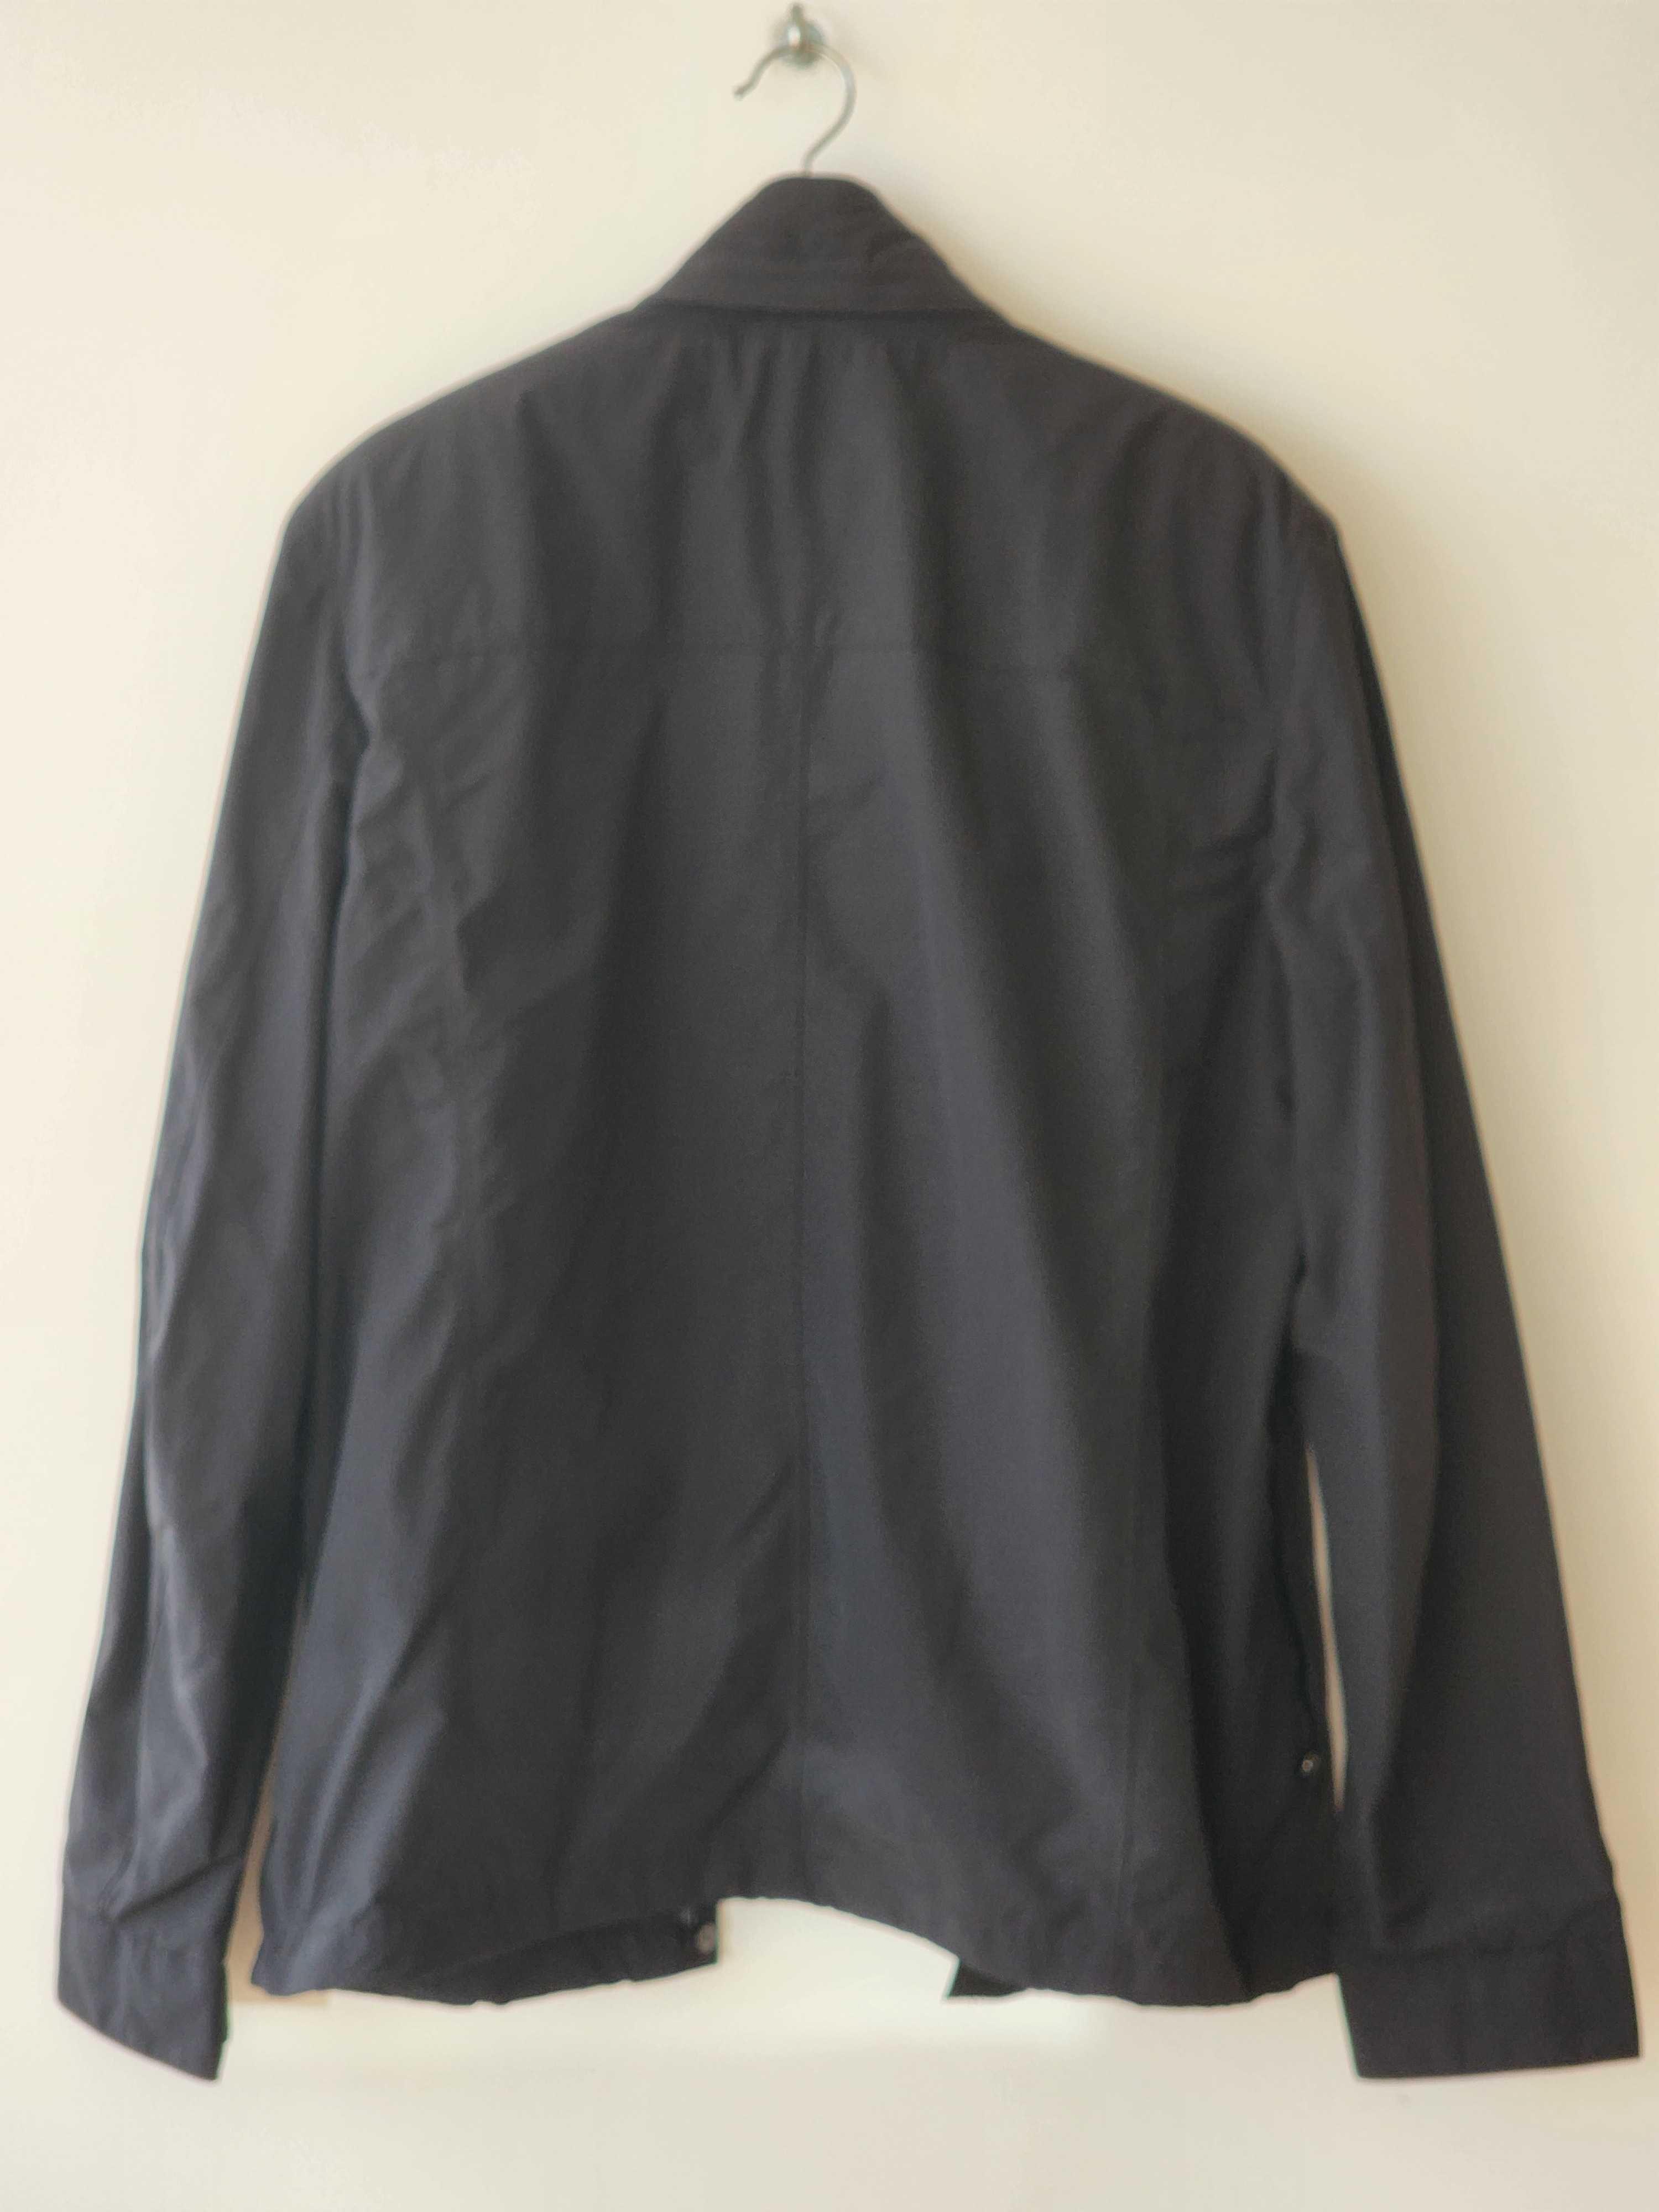 Blusão casaco preto impermeável Geox - como novo